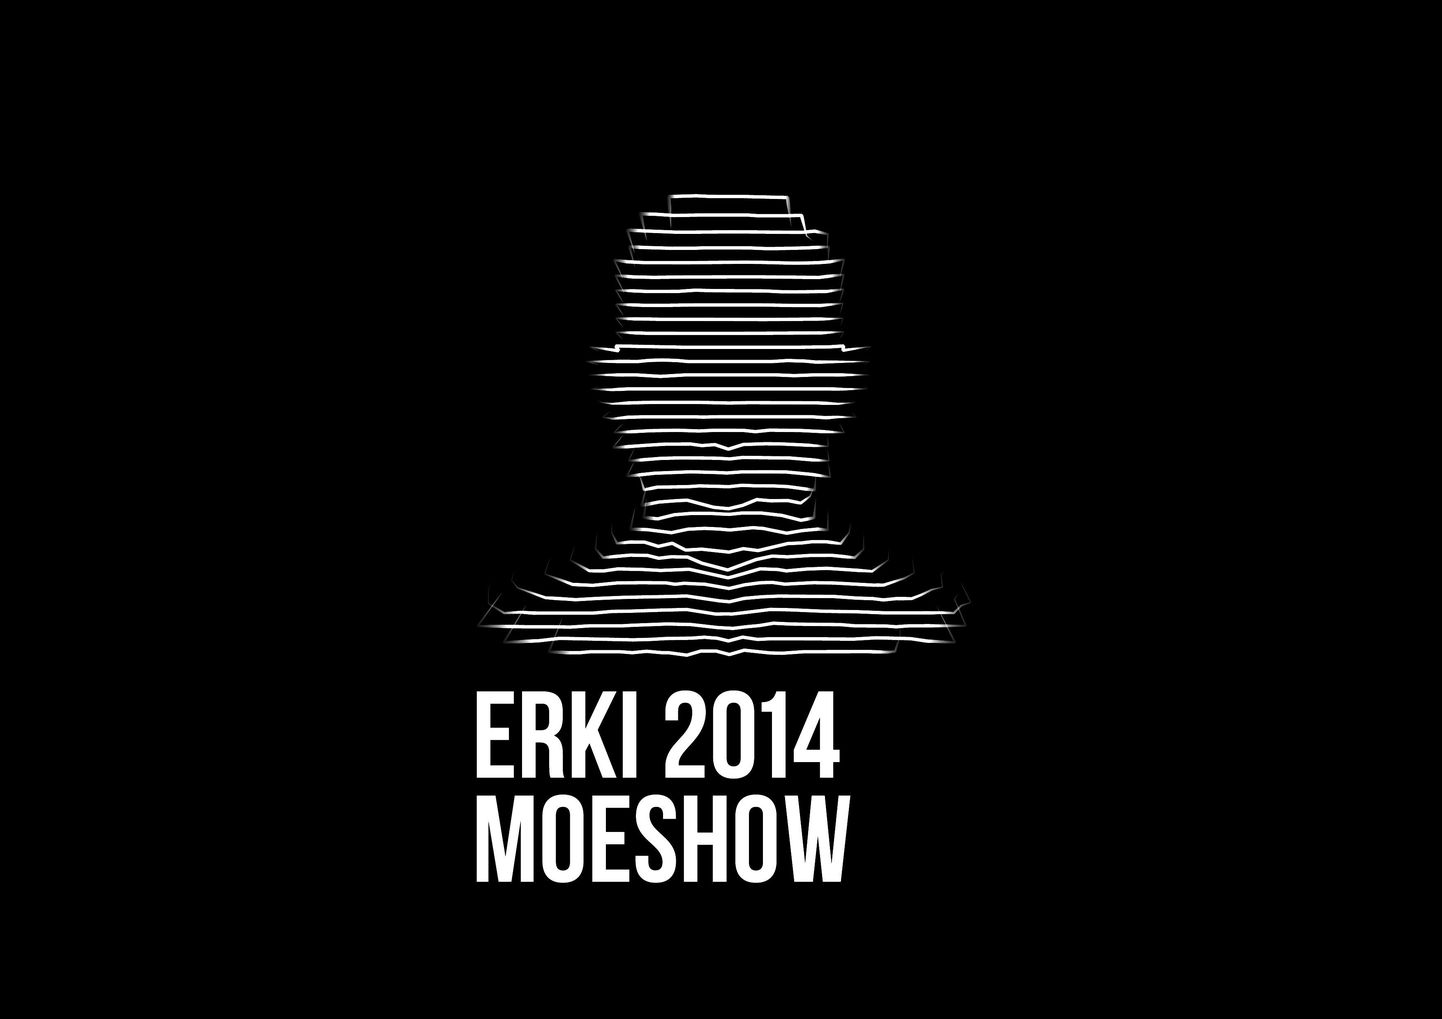 ERKI Moeshow 2014